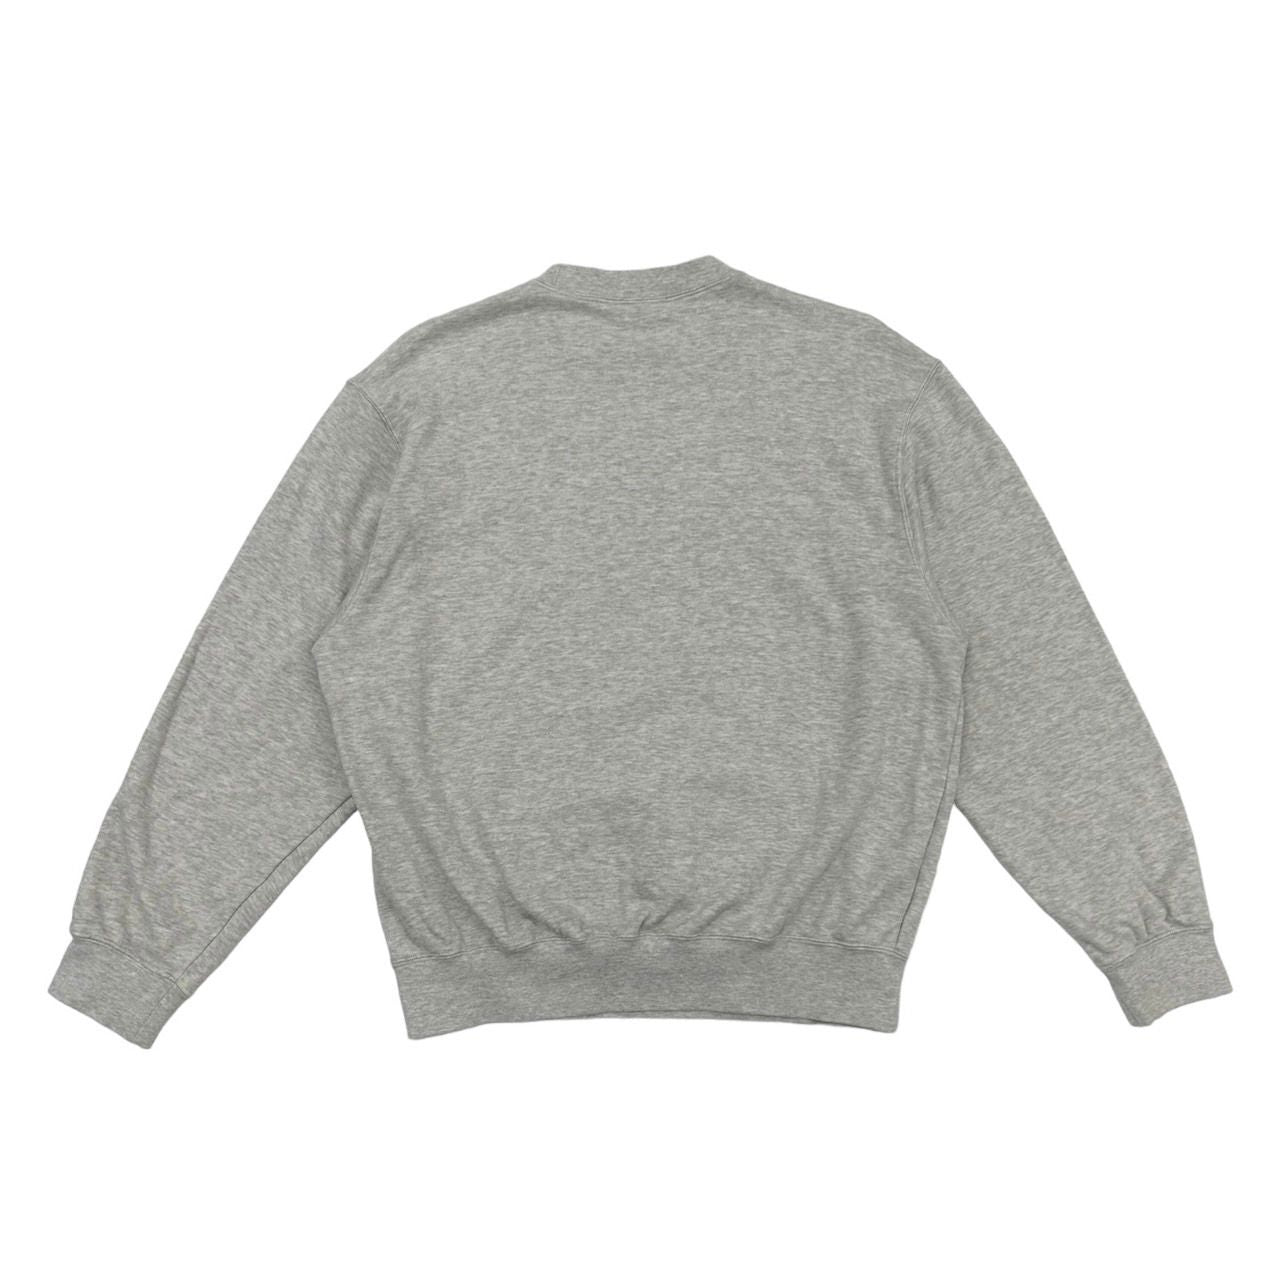 Christian Dior Sports Grey Sweatshirt